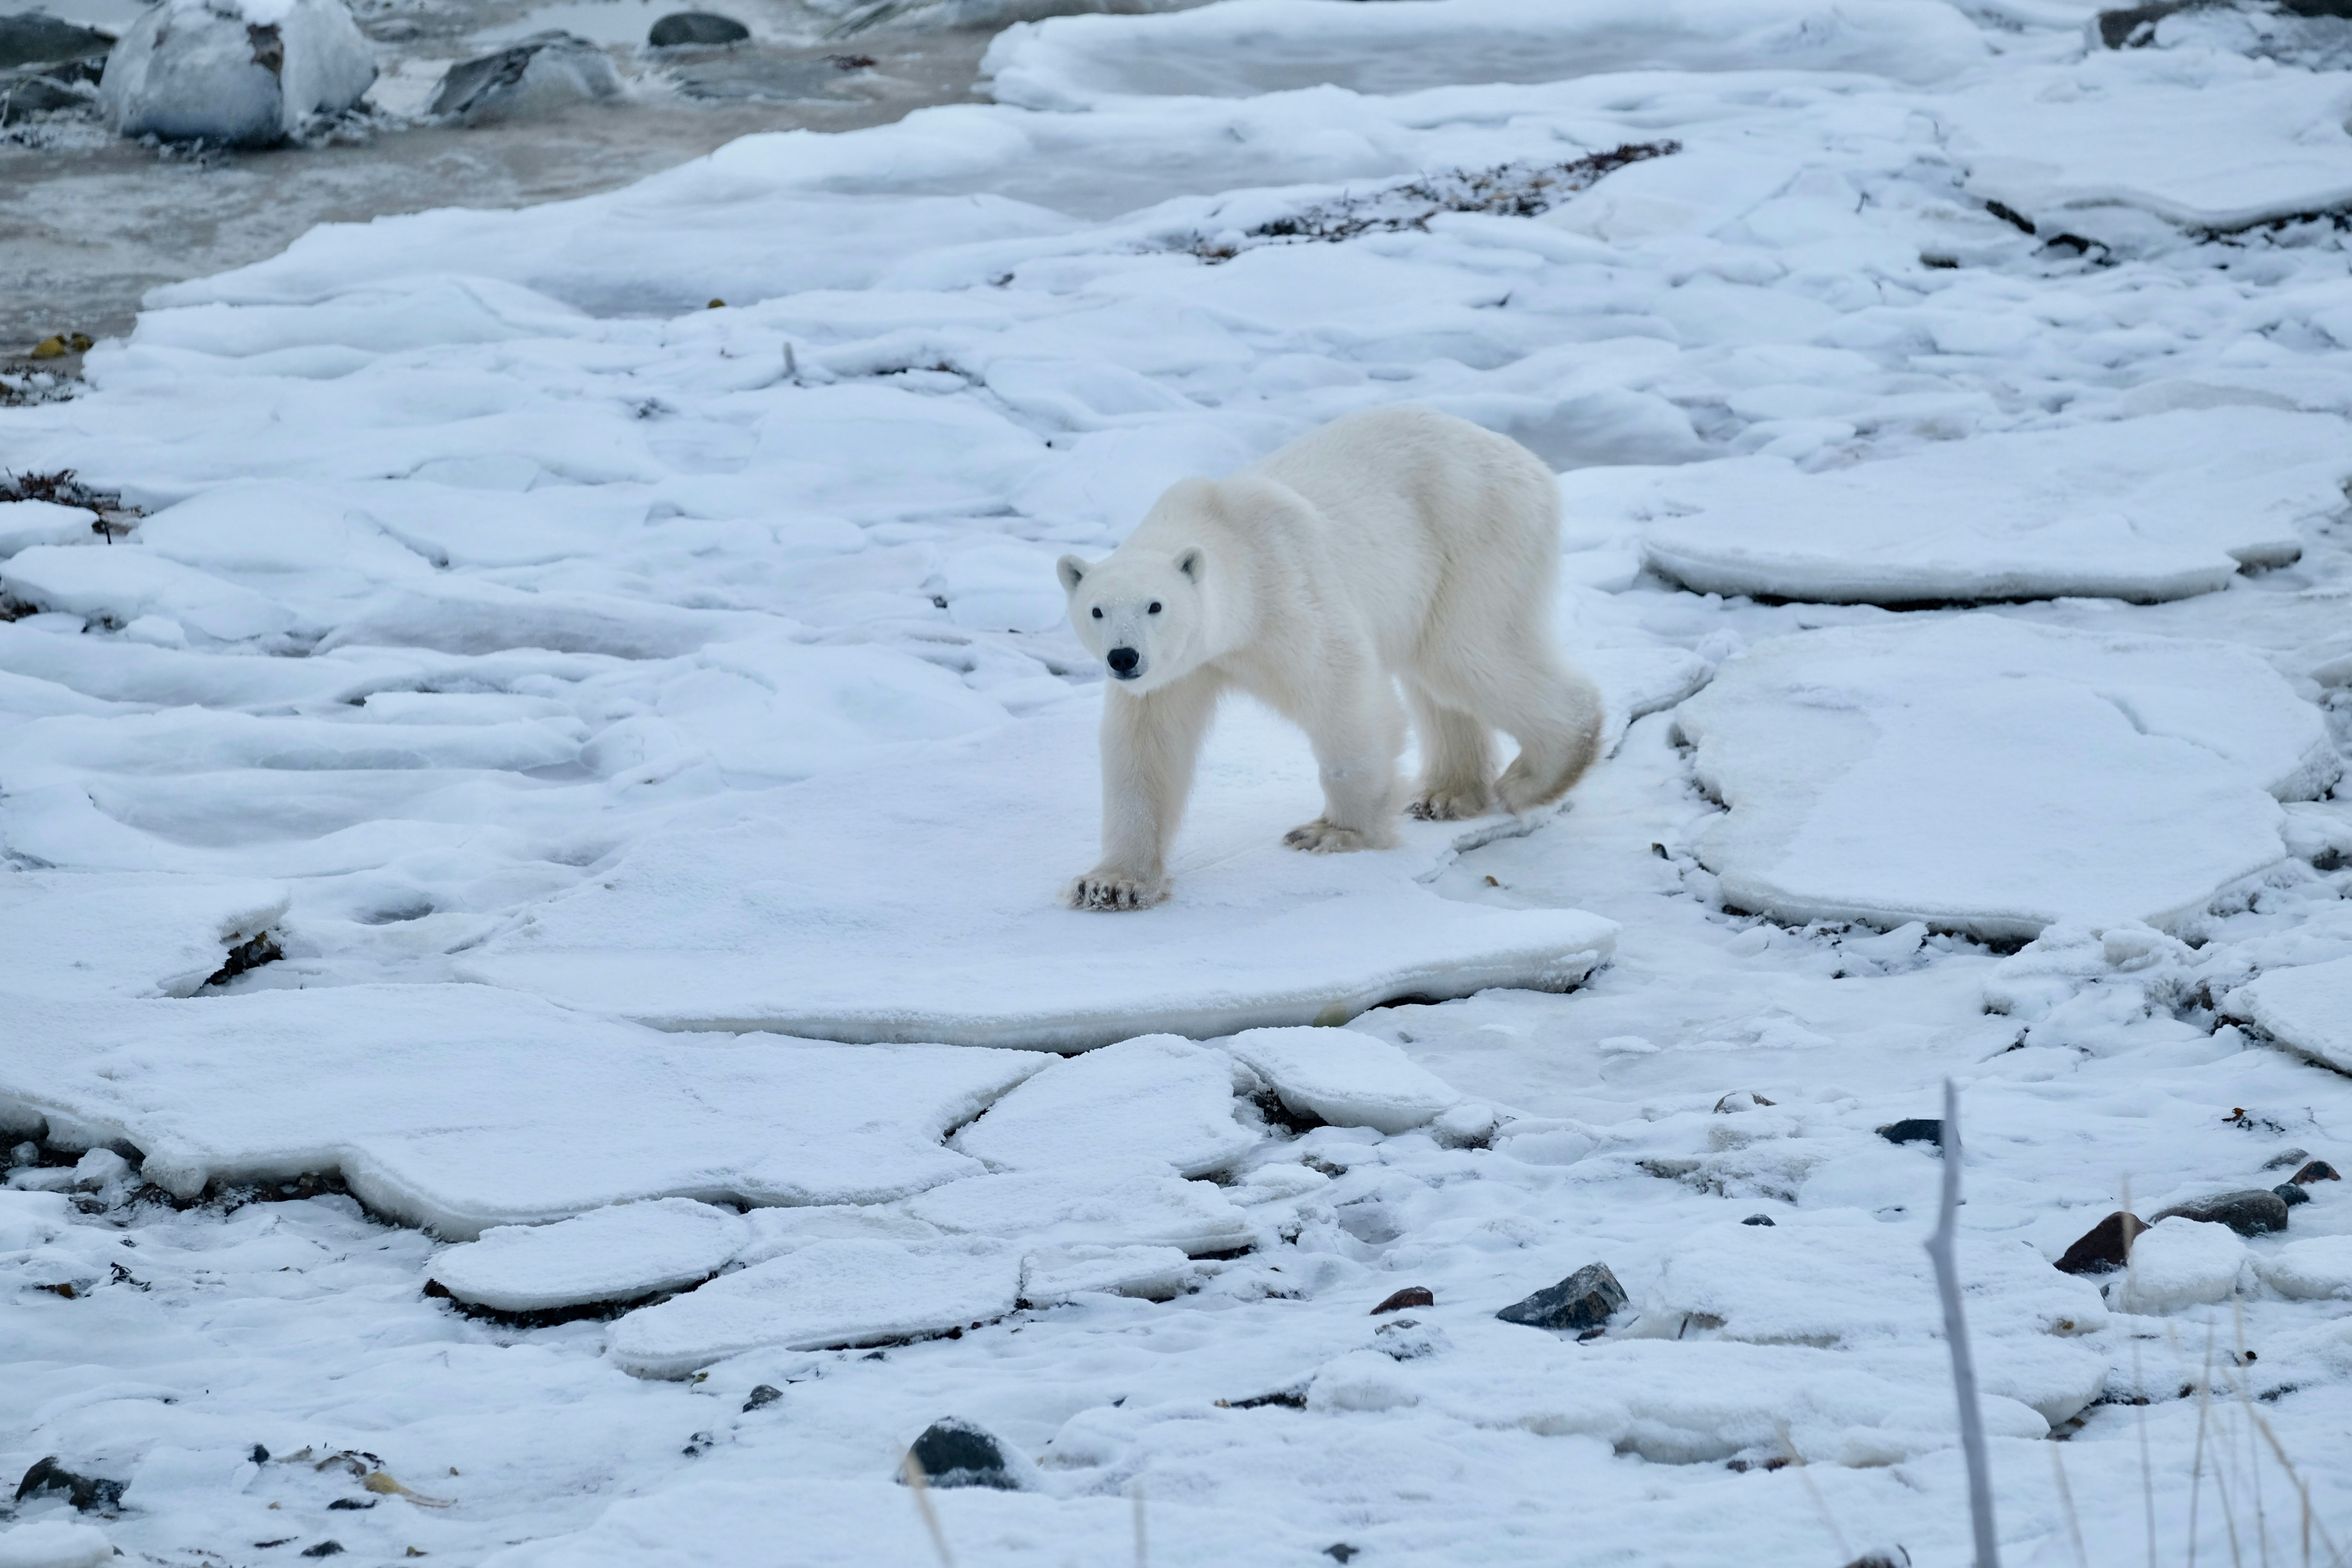 A polar bear lumbers across an icy, snowy landscape